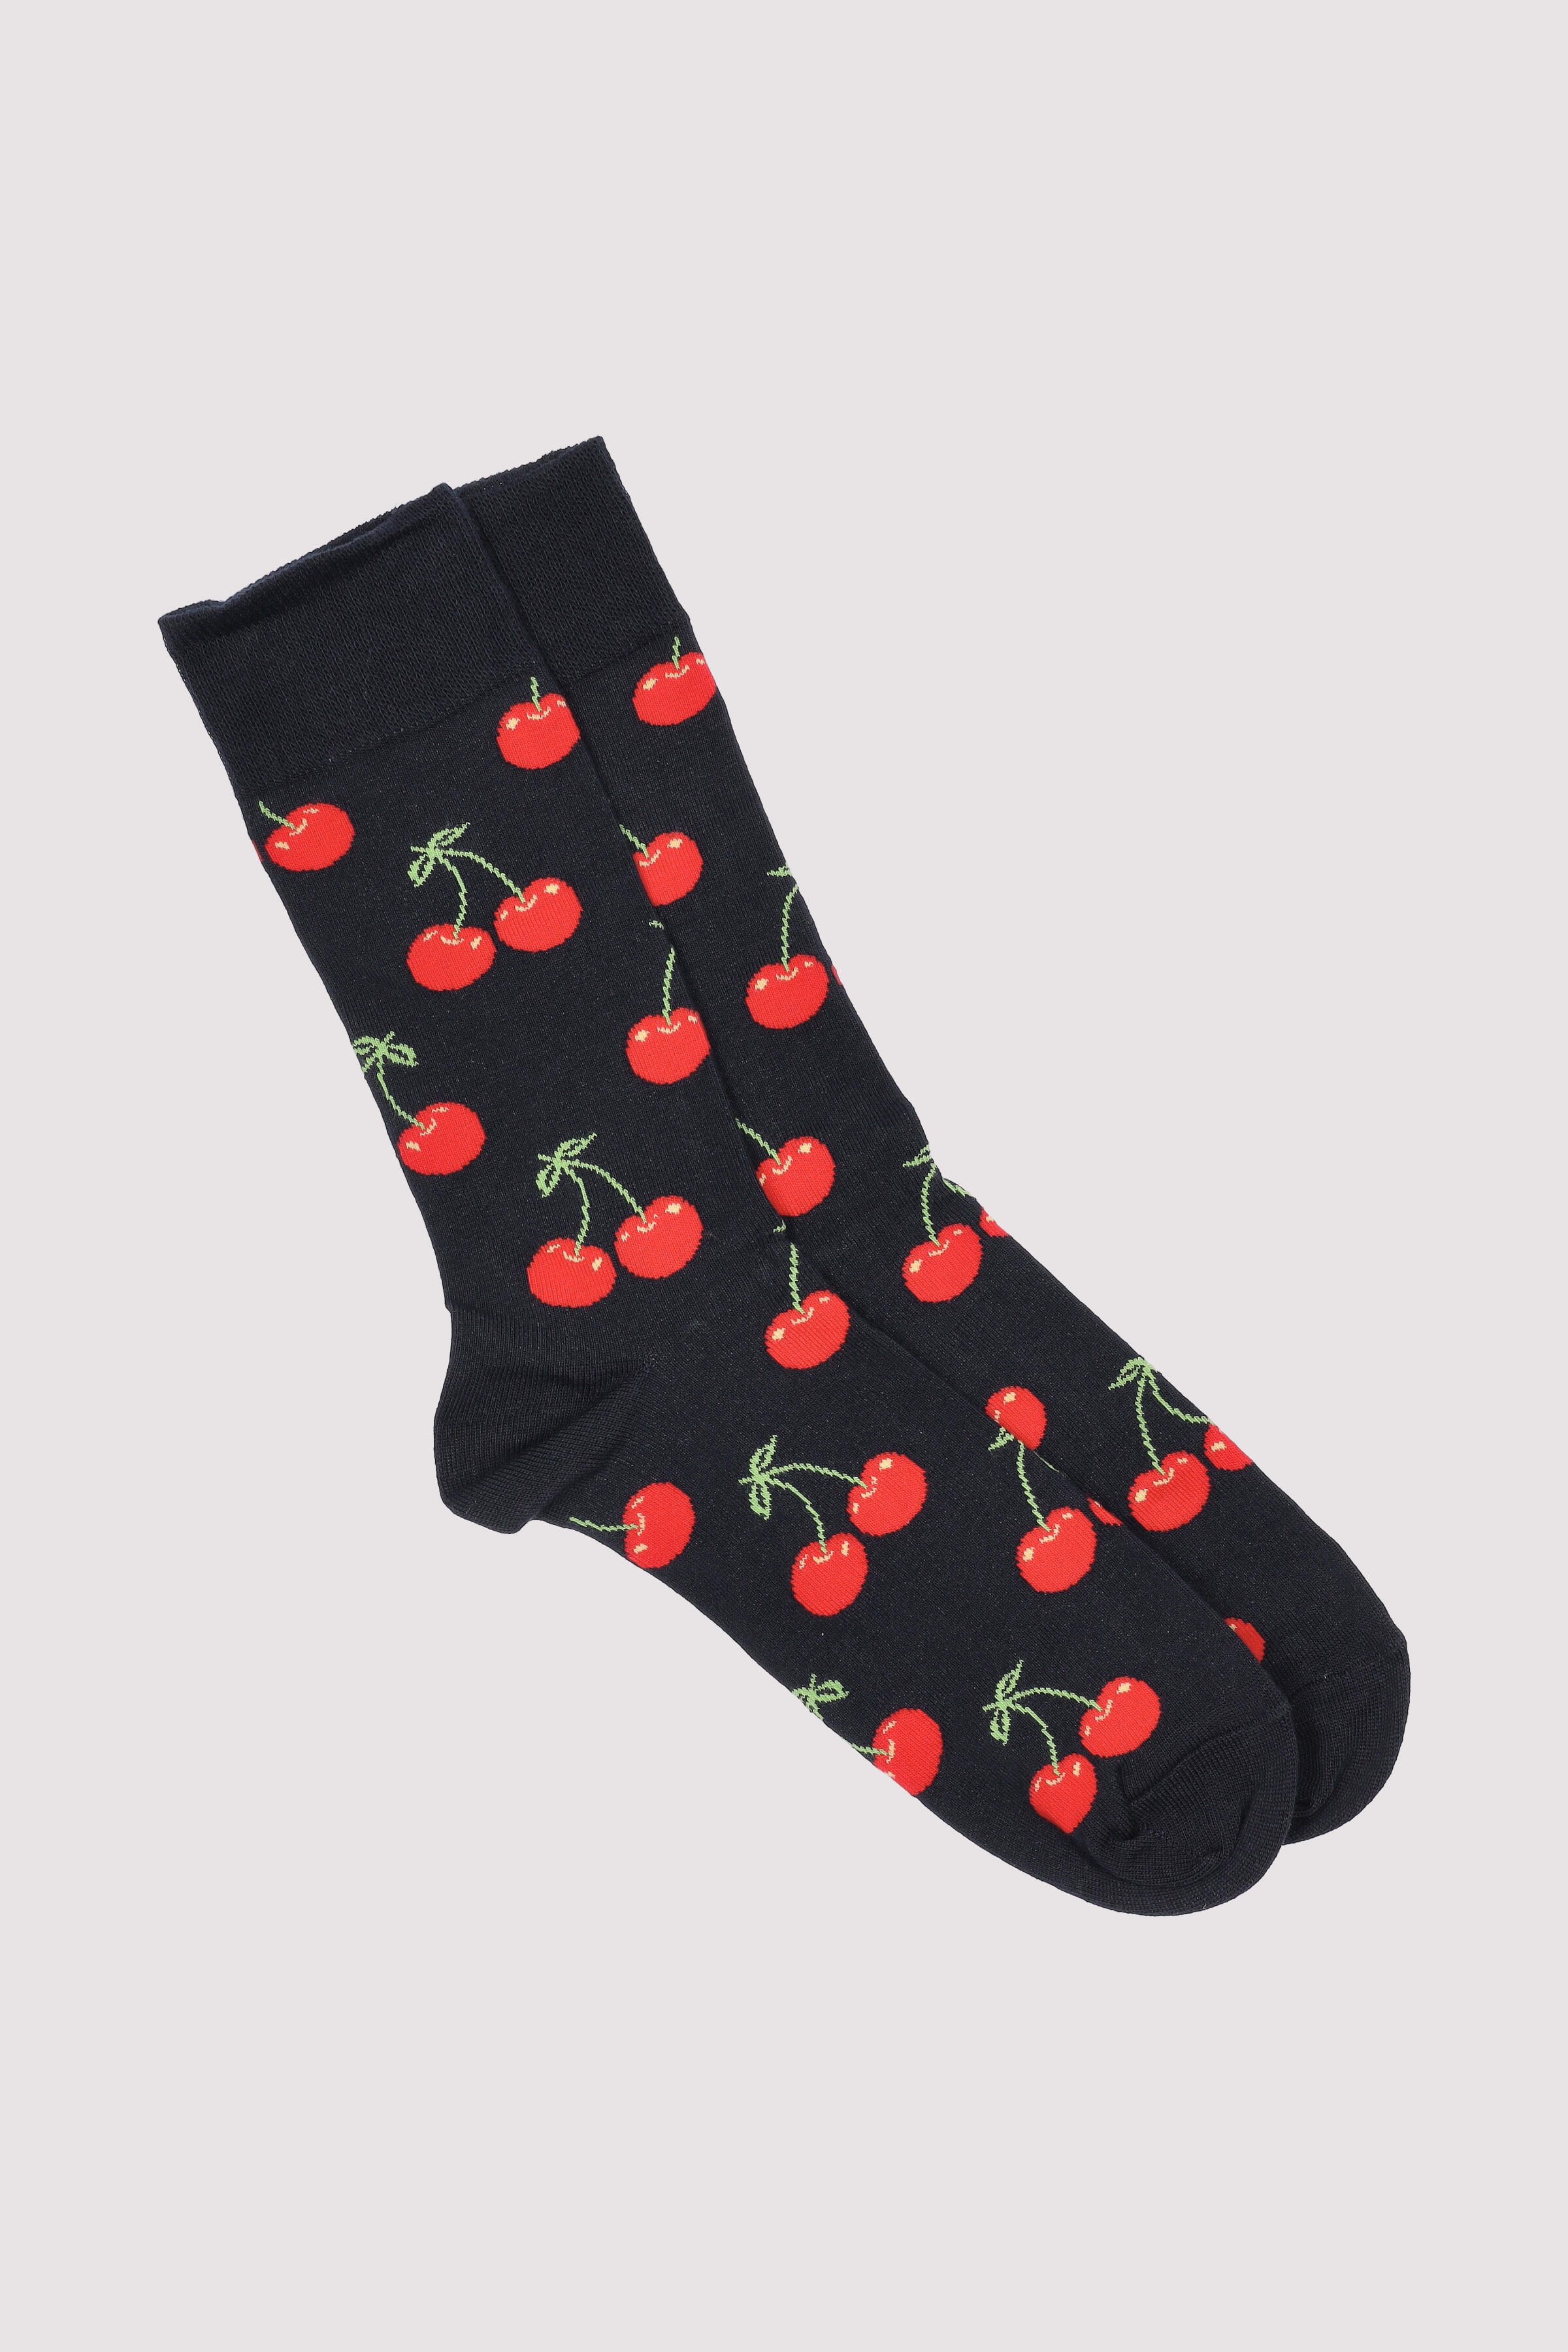 Cherry Sock